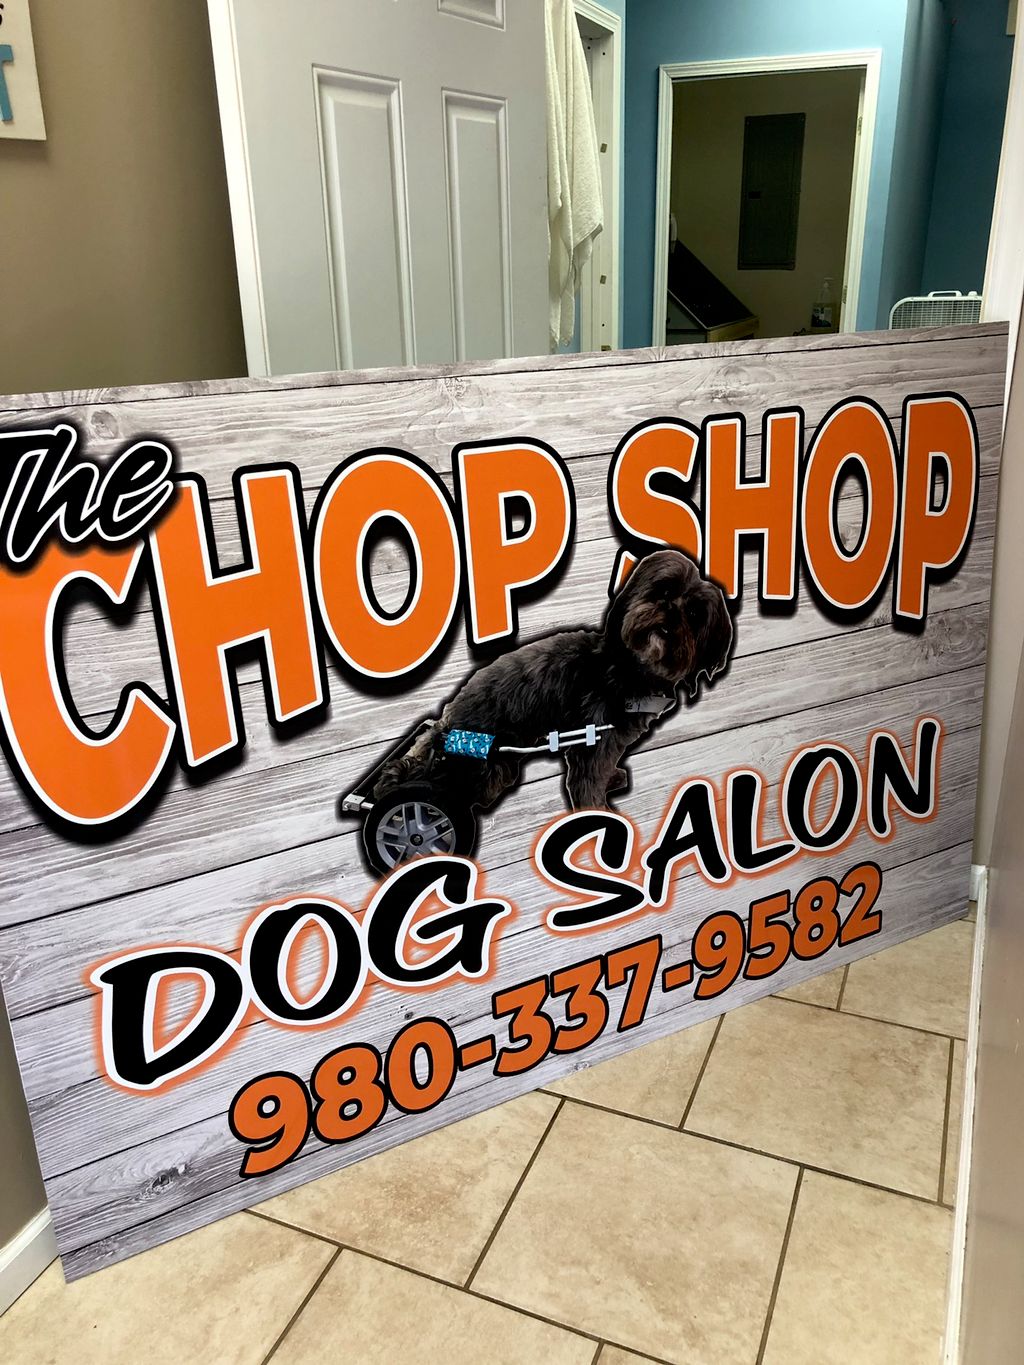 The Chop Shop Dog Salon